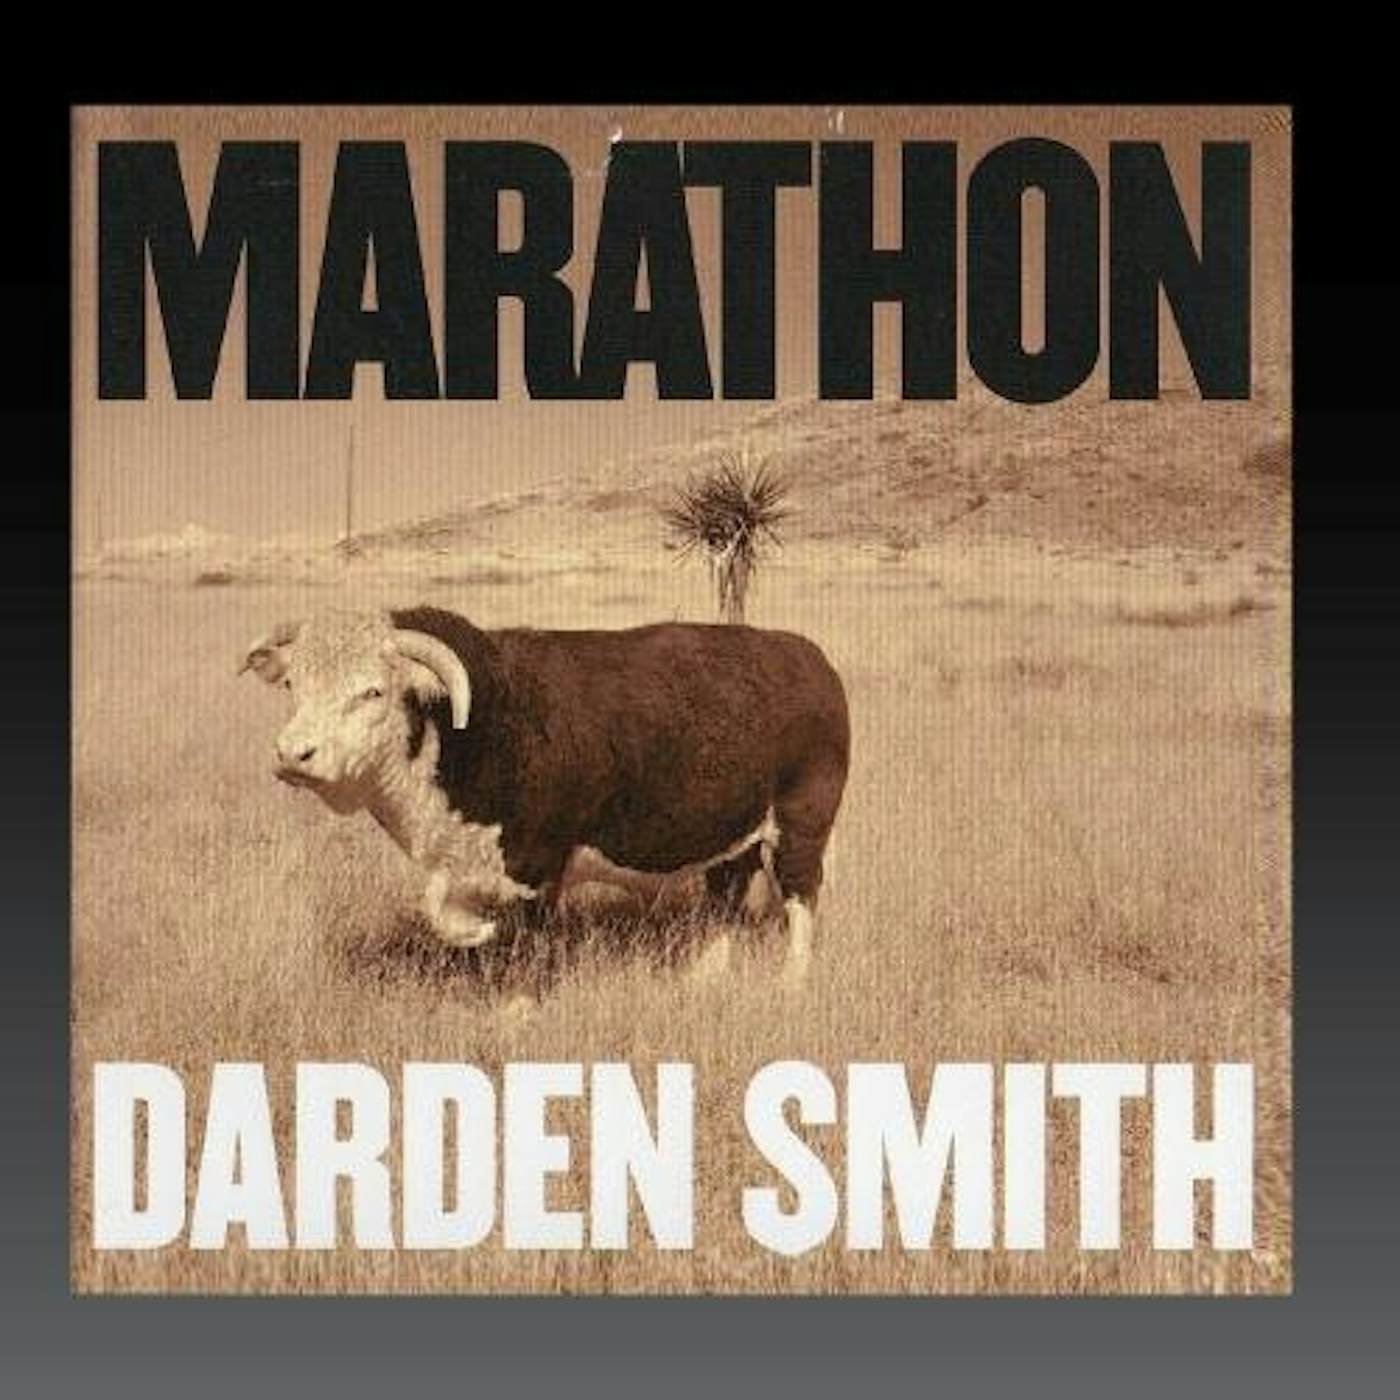 Darden Smith MARATHON CD